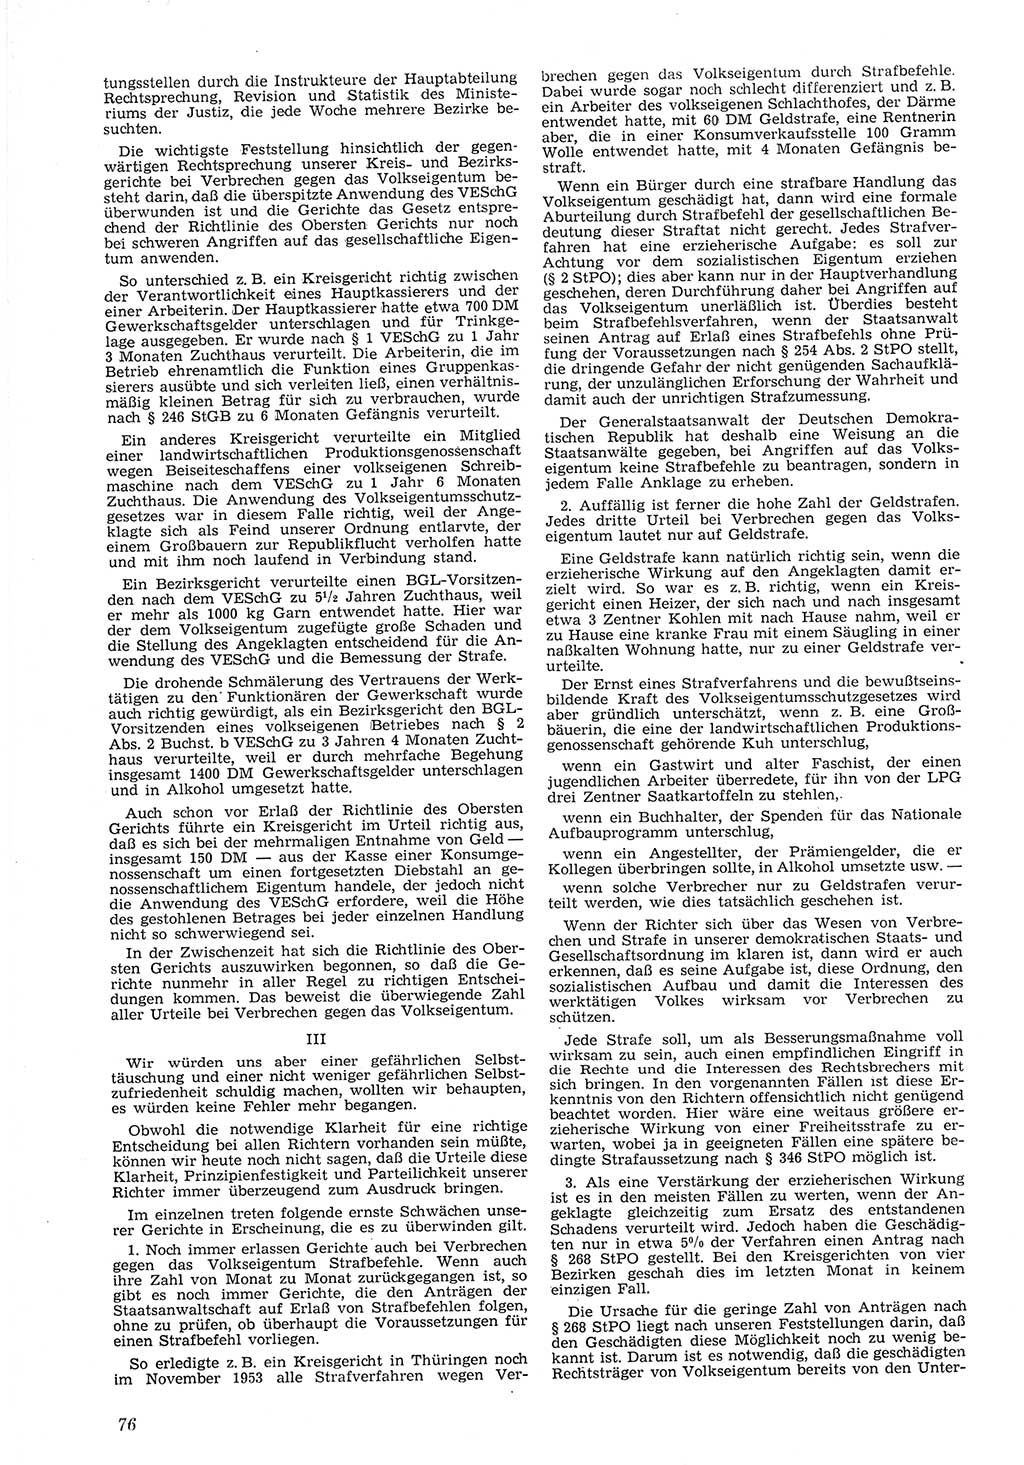 Neue Justiz (NJ), Zeitschrift für Recht und Rechtswissenschaft [Deutsche Demokratische Republik (DDR)], 8. Jahrgang 1954, Seite 76 (NJ DDR 1954, S. 76)